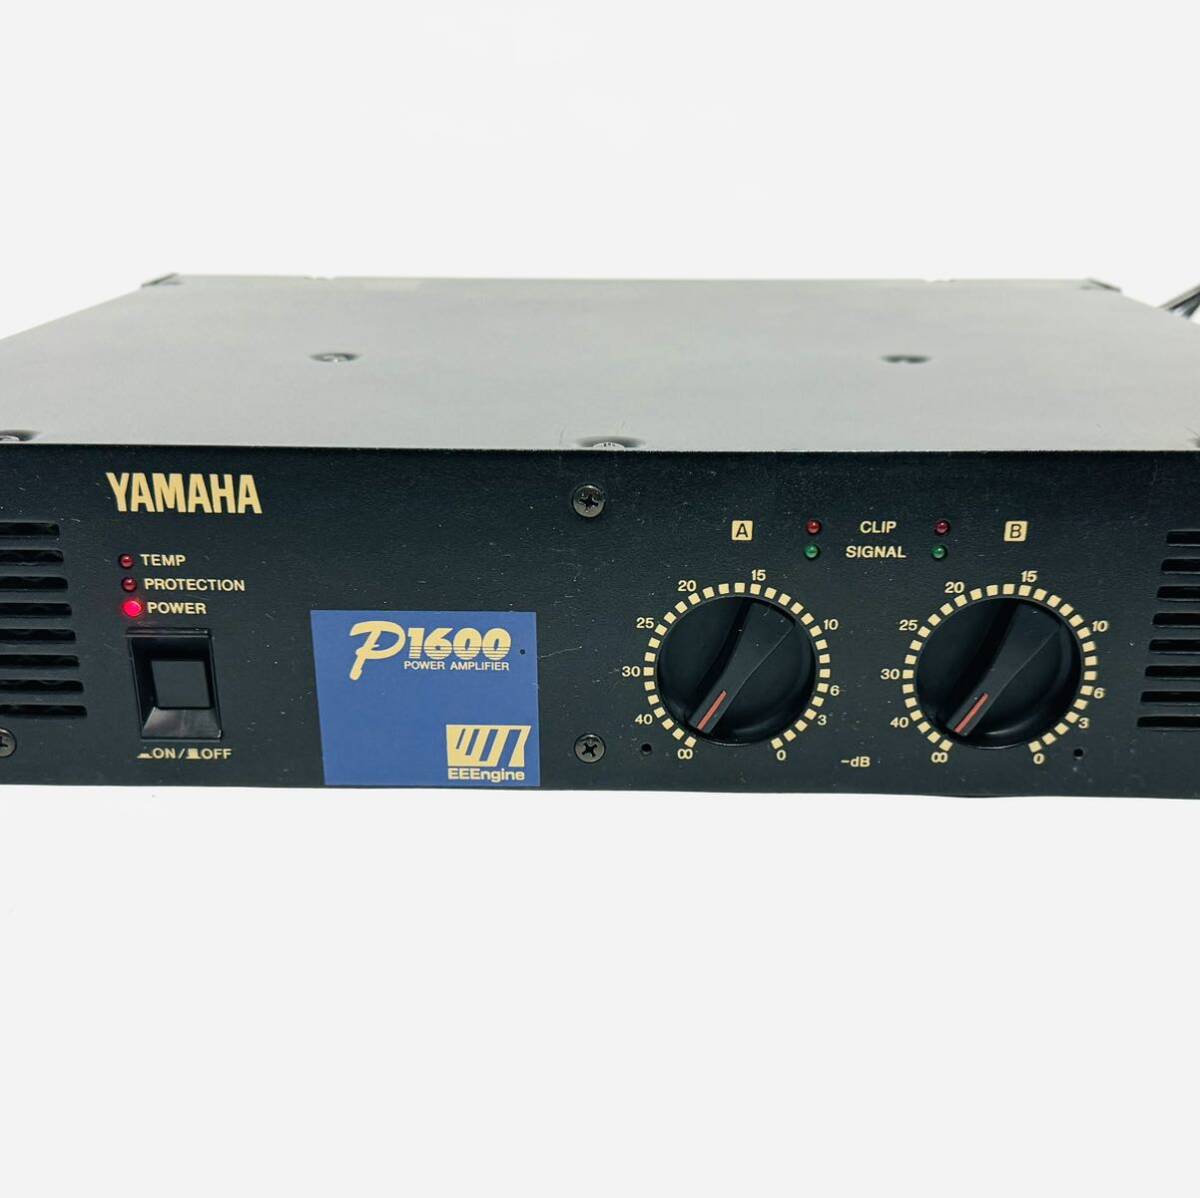  бесплатная доставка рабочий товар для бизнеса усилитель мощности YAMAHA P1600